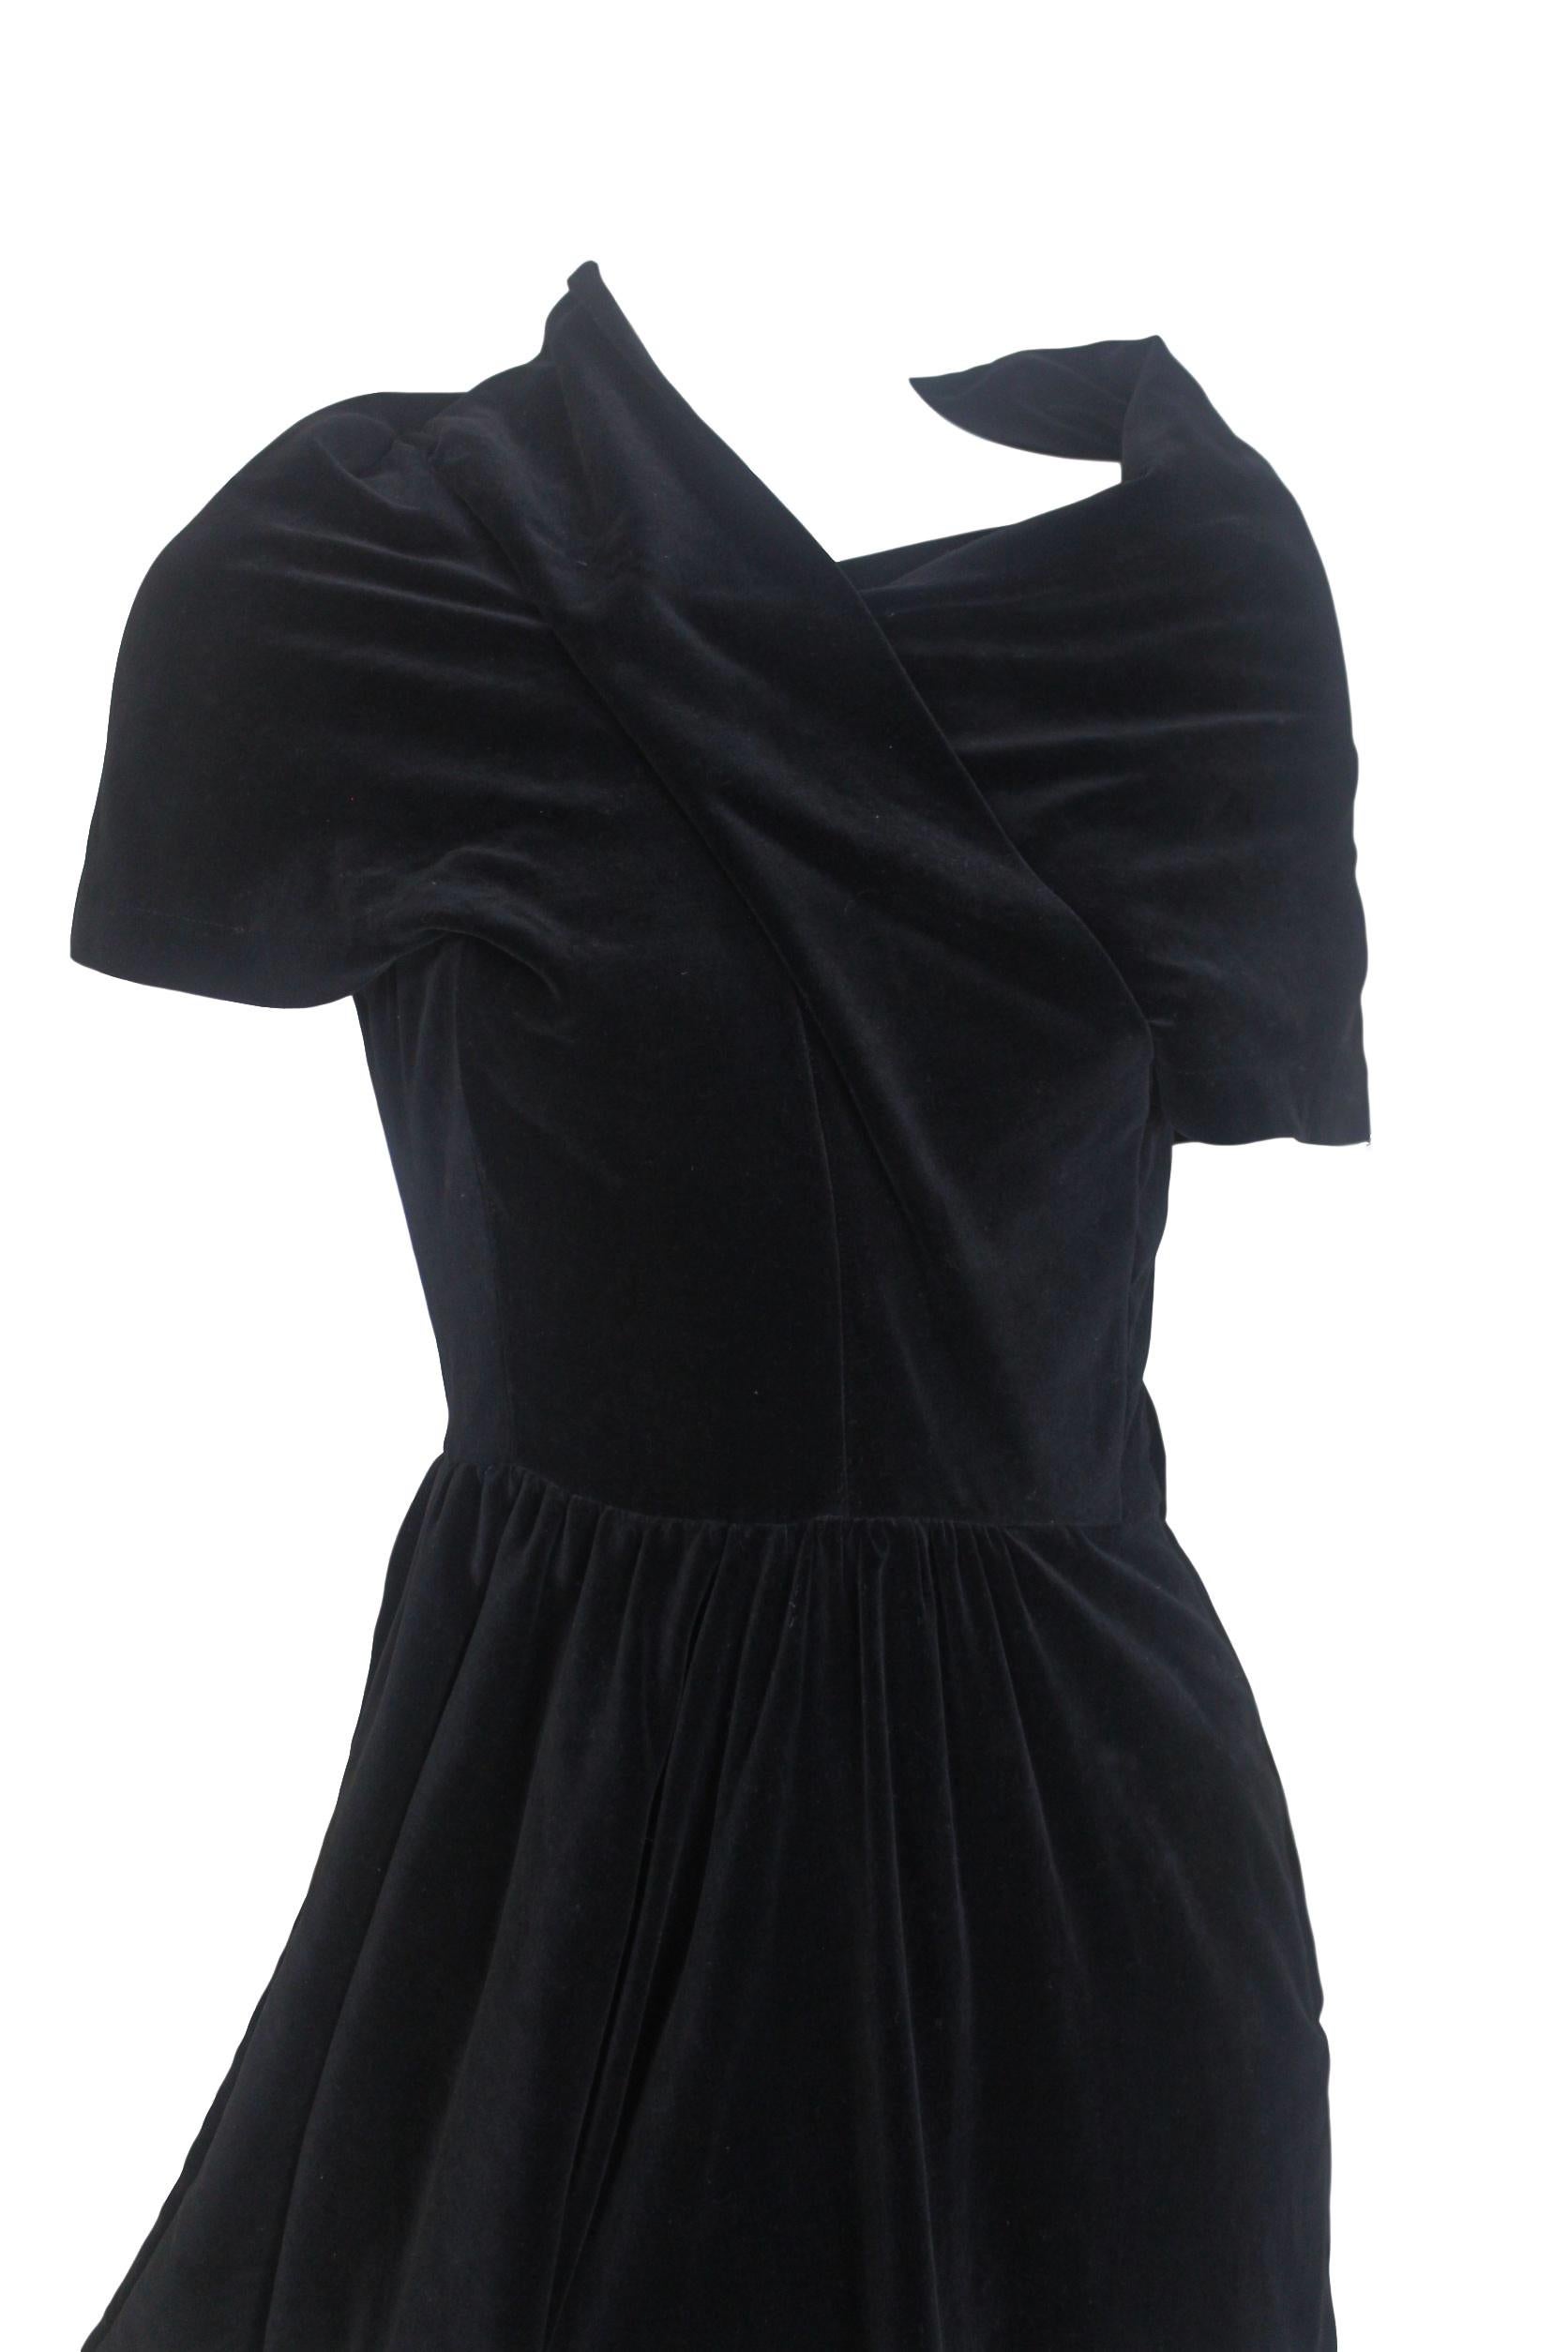 Comme des Garcons Noir Vintage  SS 1989 Dior Esque Cotton Velvet Dress  For Sale 4